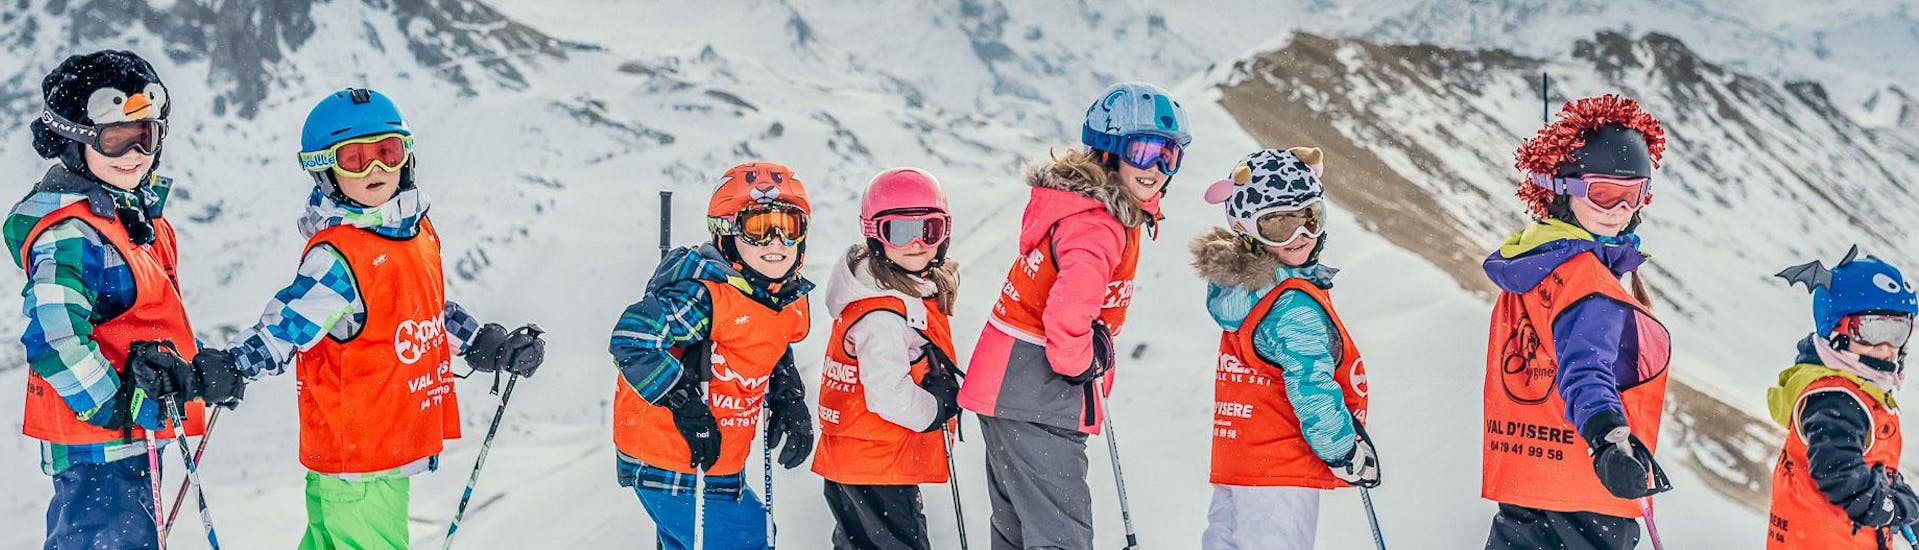 Des enfants font des Cours de ski Enfants (3-13 ans) - Basse saison avec notre partenaire Starski Grand Bornand.